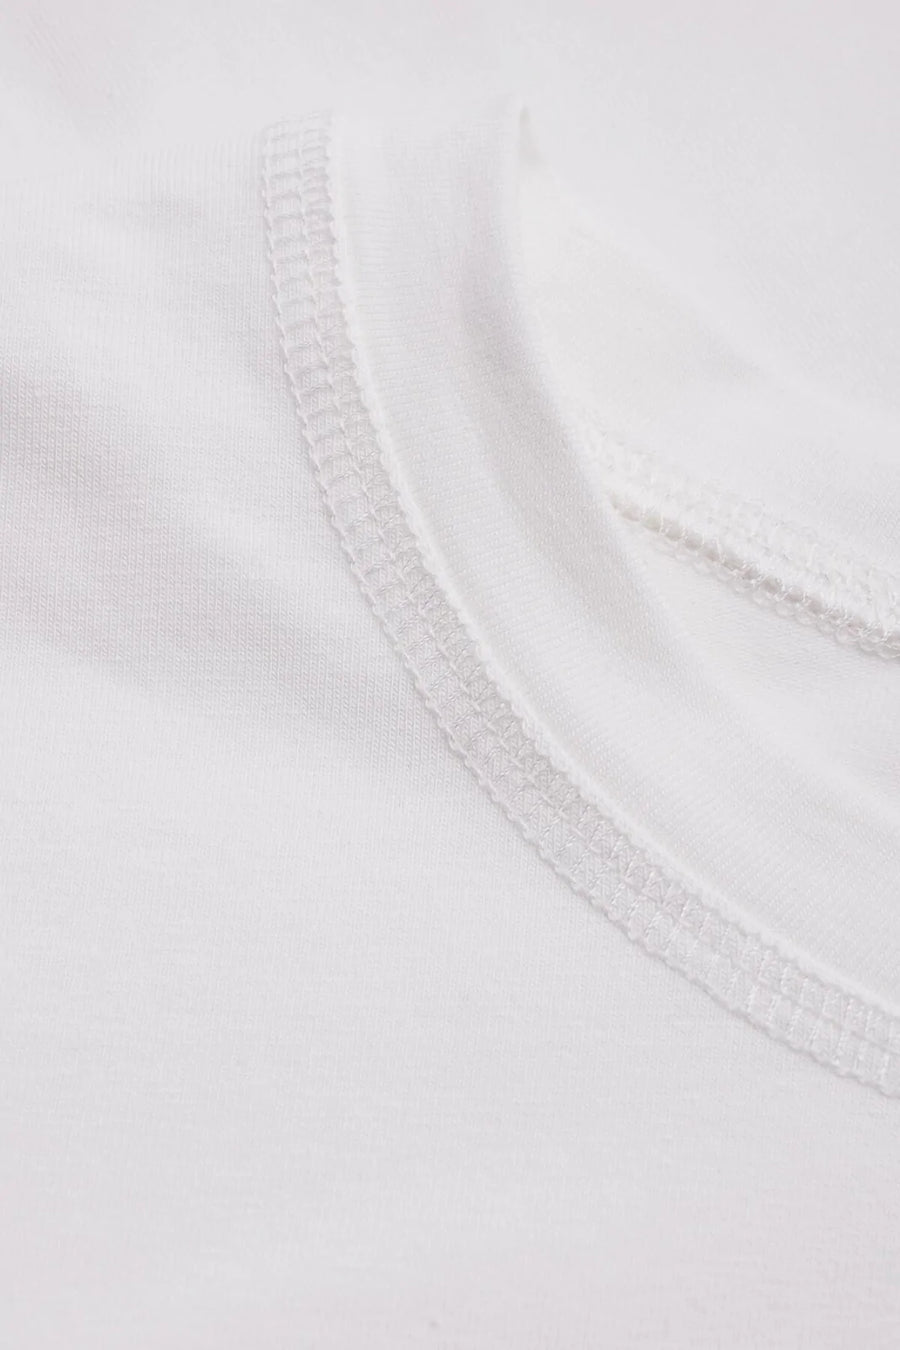 Les Goodies - Elementy Wear Bas T-shirt White